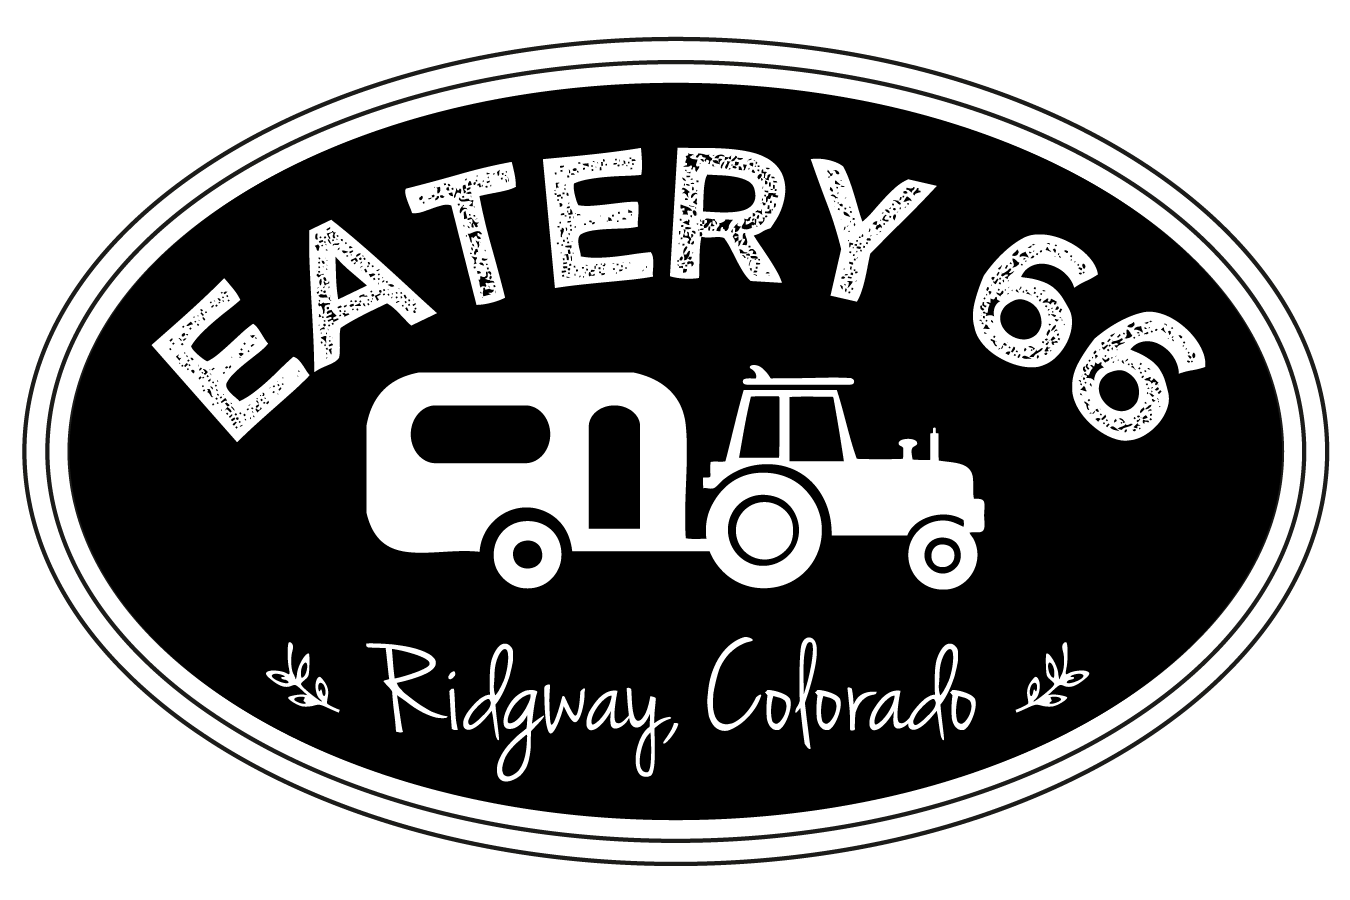 Eatery 66